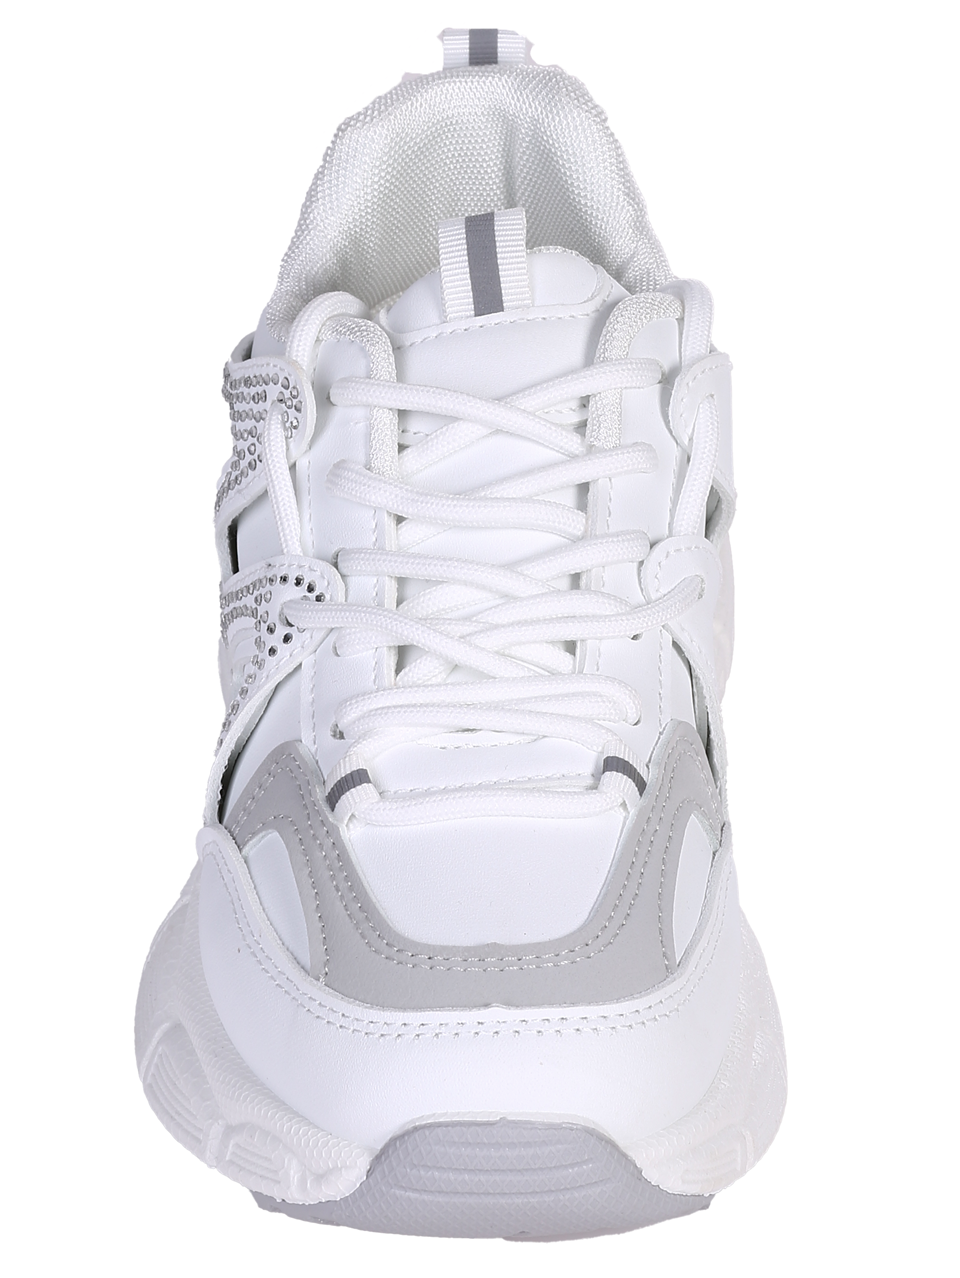 Ежедневни дамски обувки в бяло 3U-24005 white